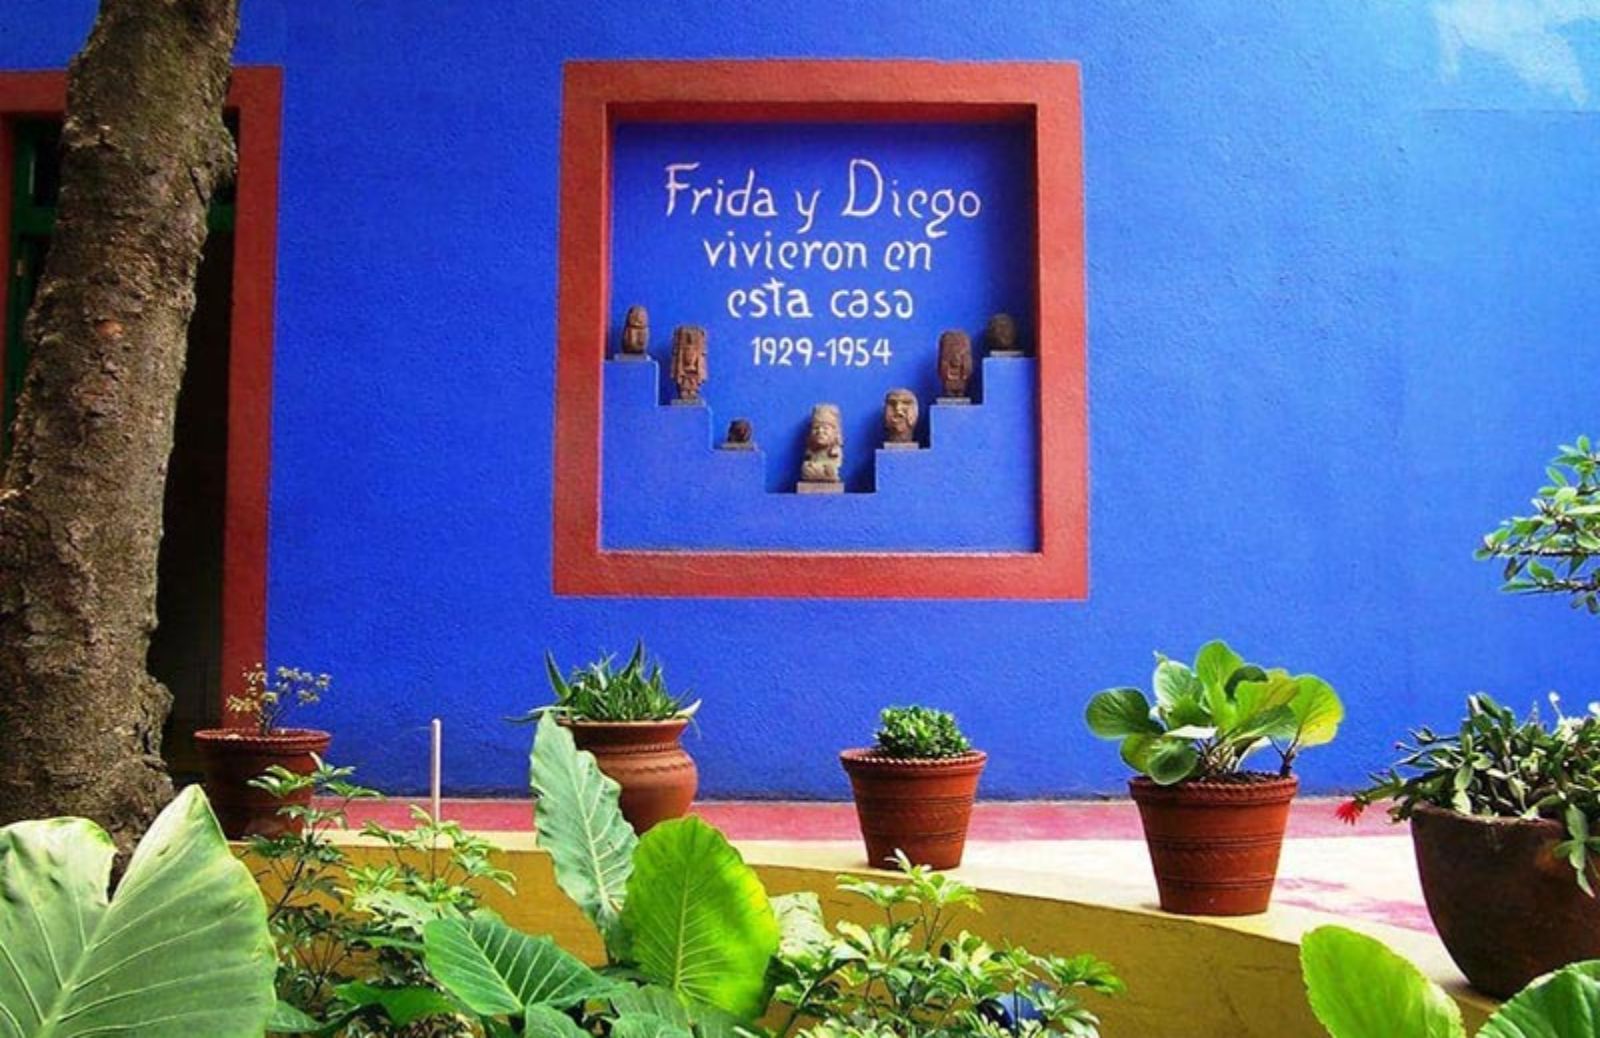 Arredare casa come Frida Kahlo: 5 idee da copiare